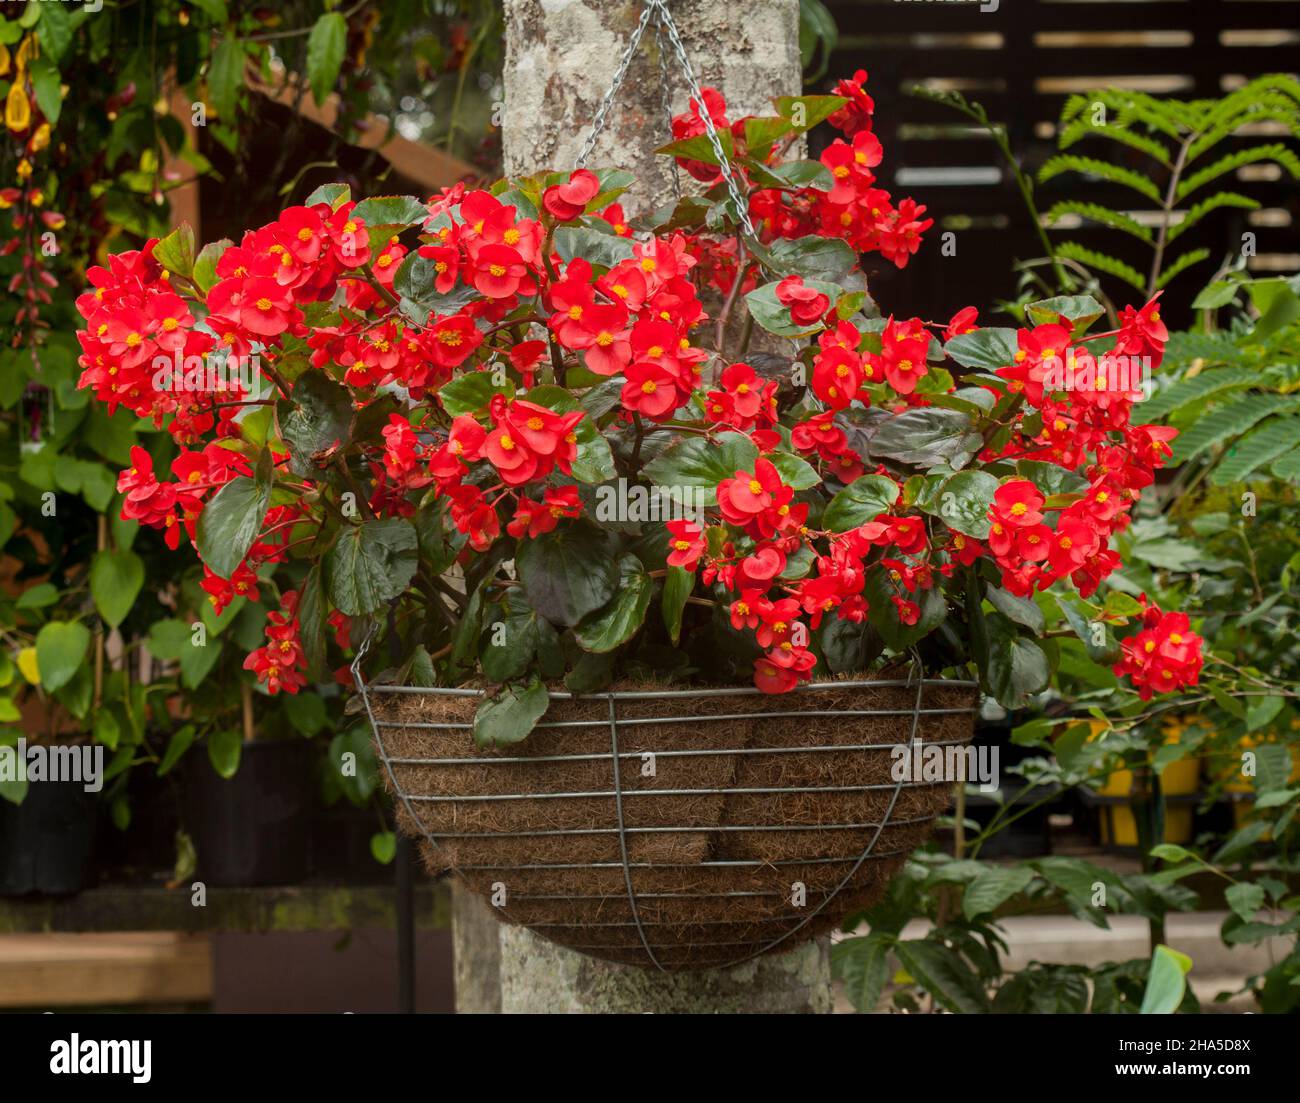 Begonia, bedeckt mit leuchtend roten Blüten, wächst in einem hängenden Korb Stockfoto